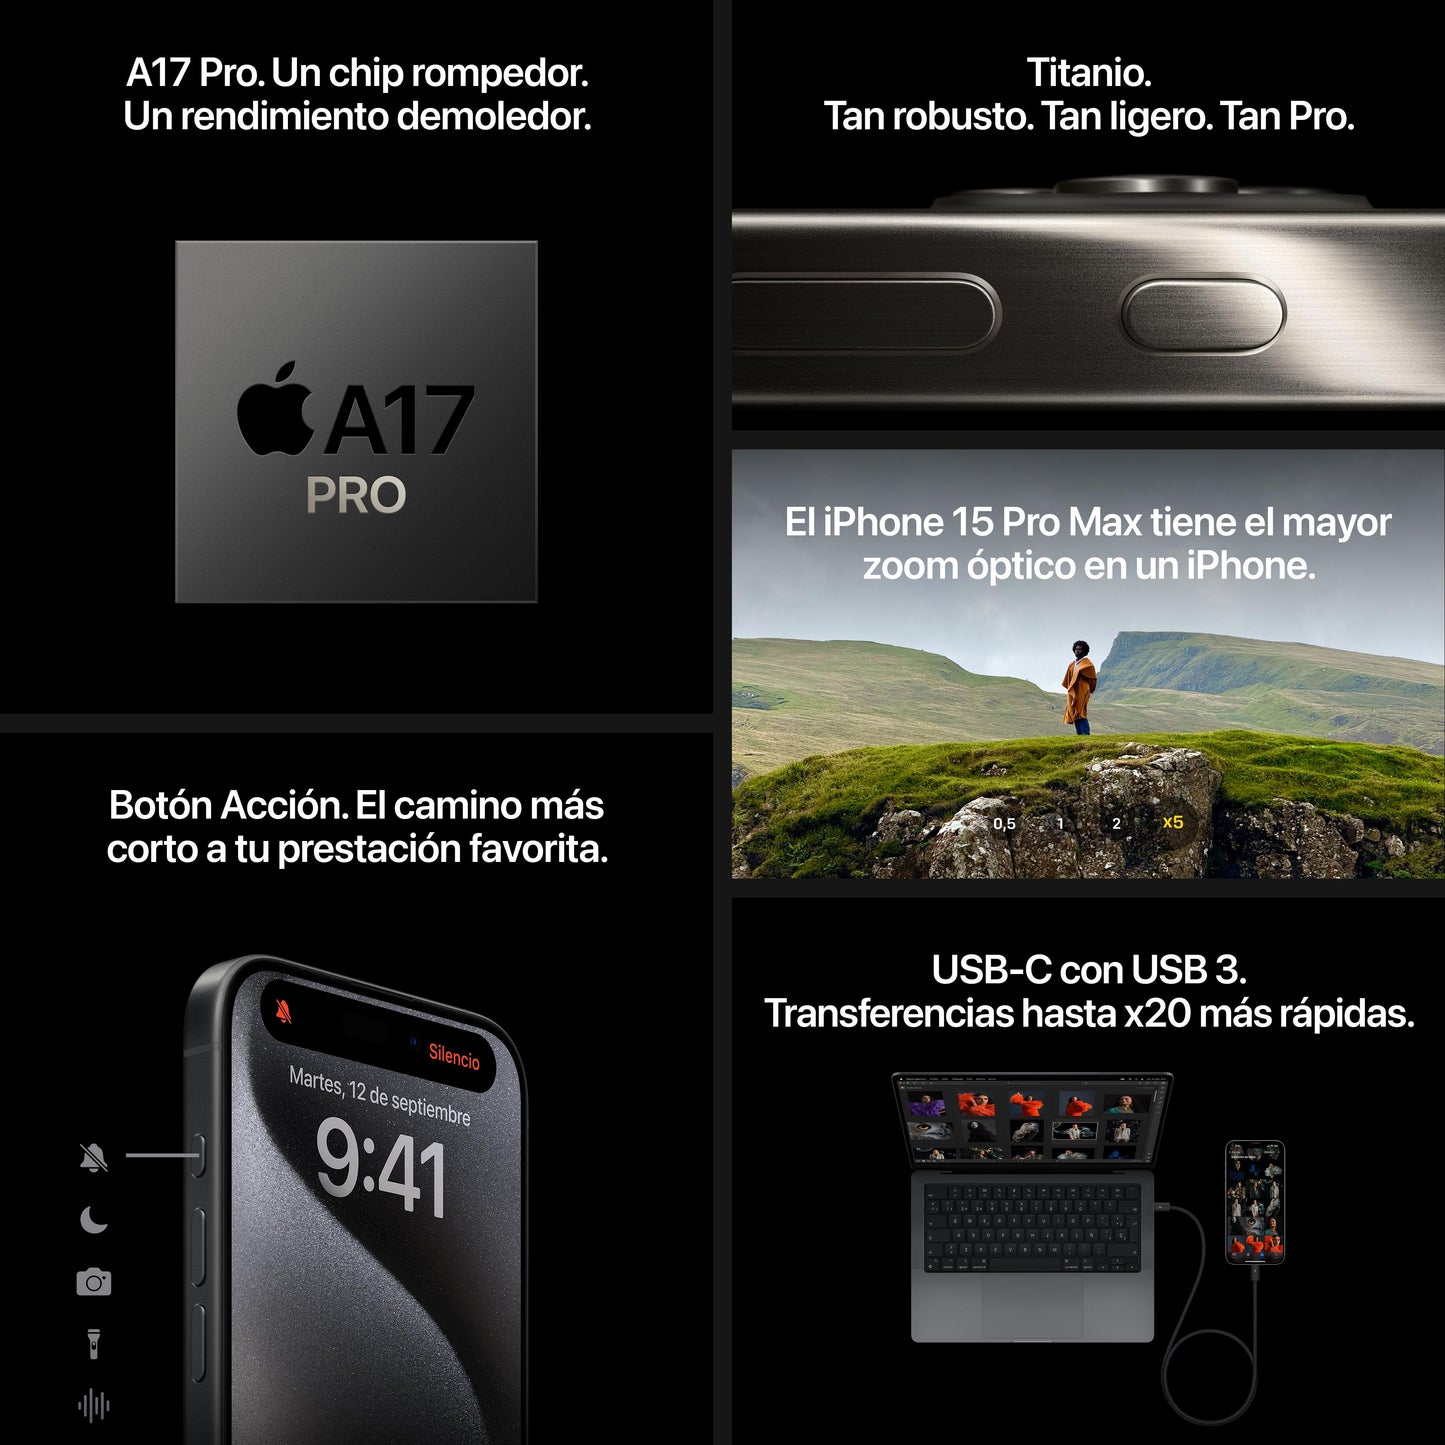 iPhone 15 Pro 1 TB Titanio natural